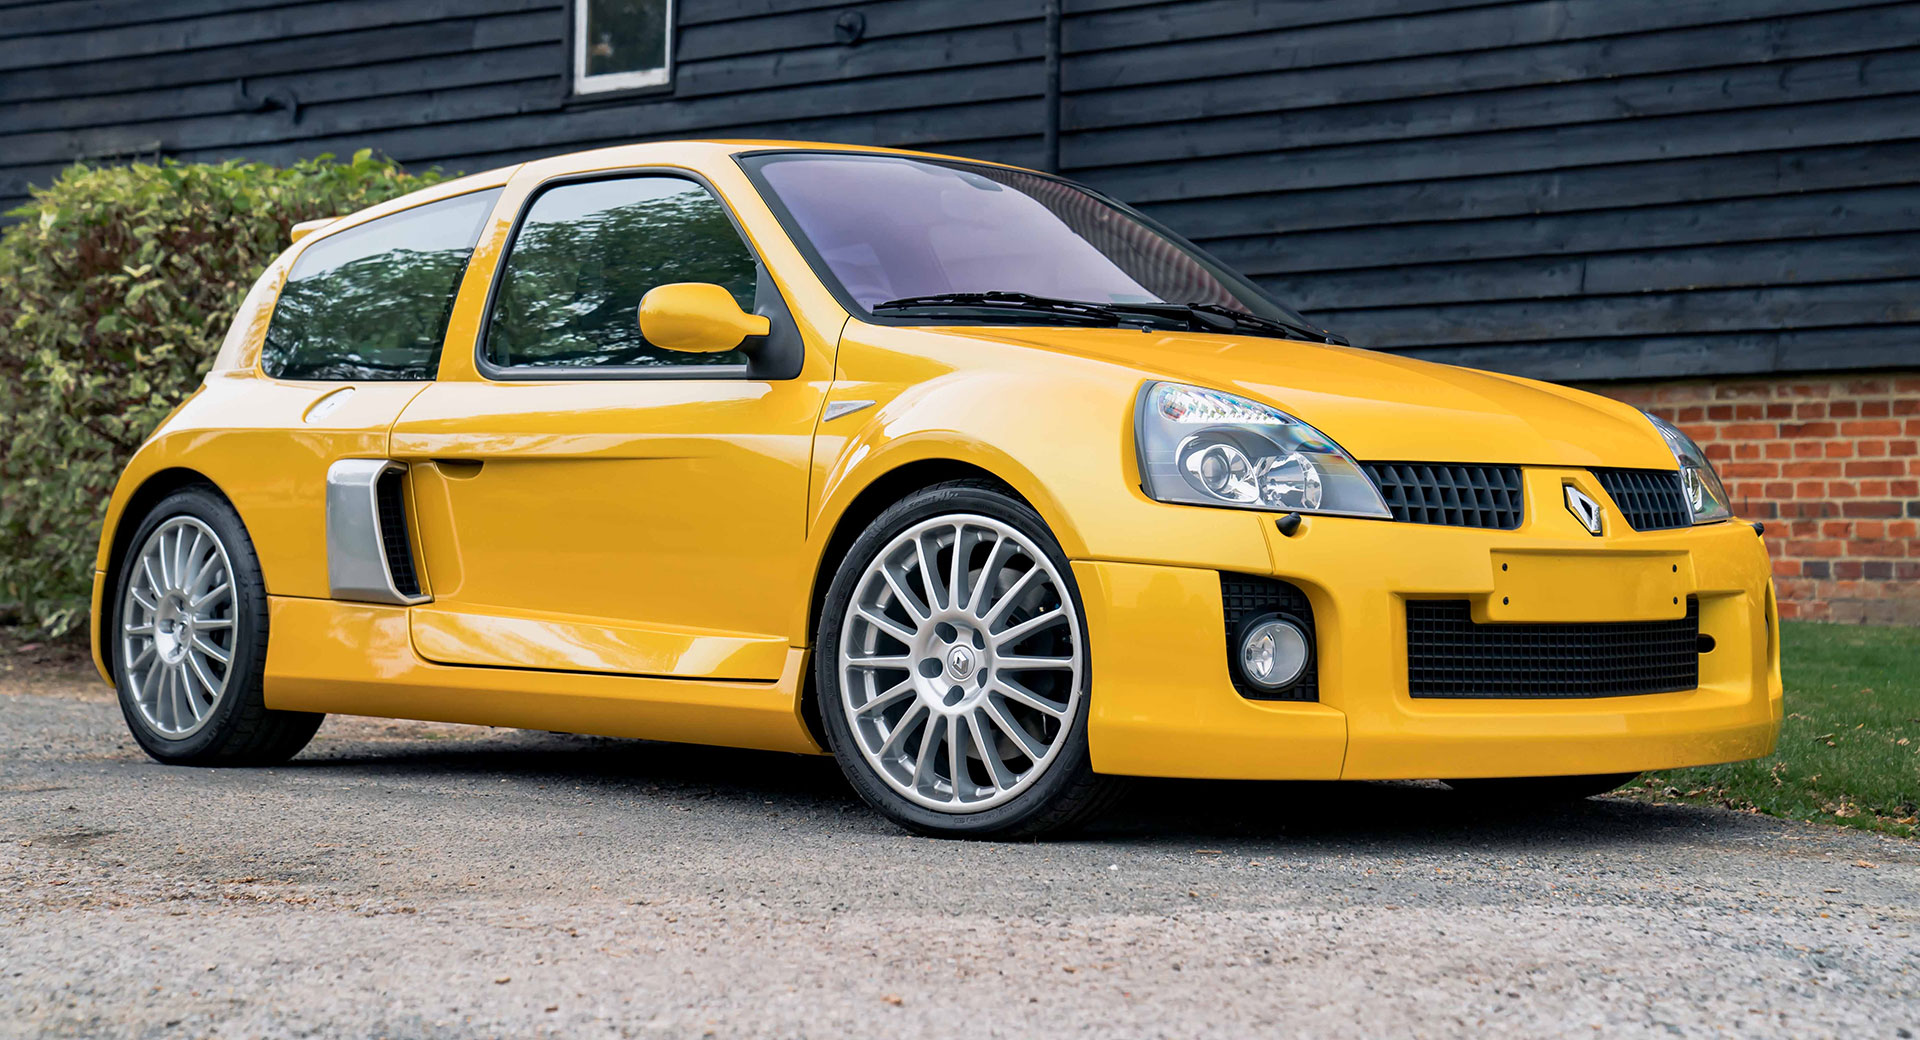 Reparatie mogelijk Stijg Veel gevaarlijke situaties A Mint 980-Mile Renault Clio V6 Just Sold For A Record Price | Carscoops